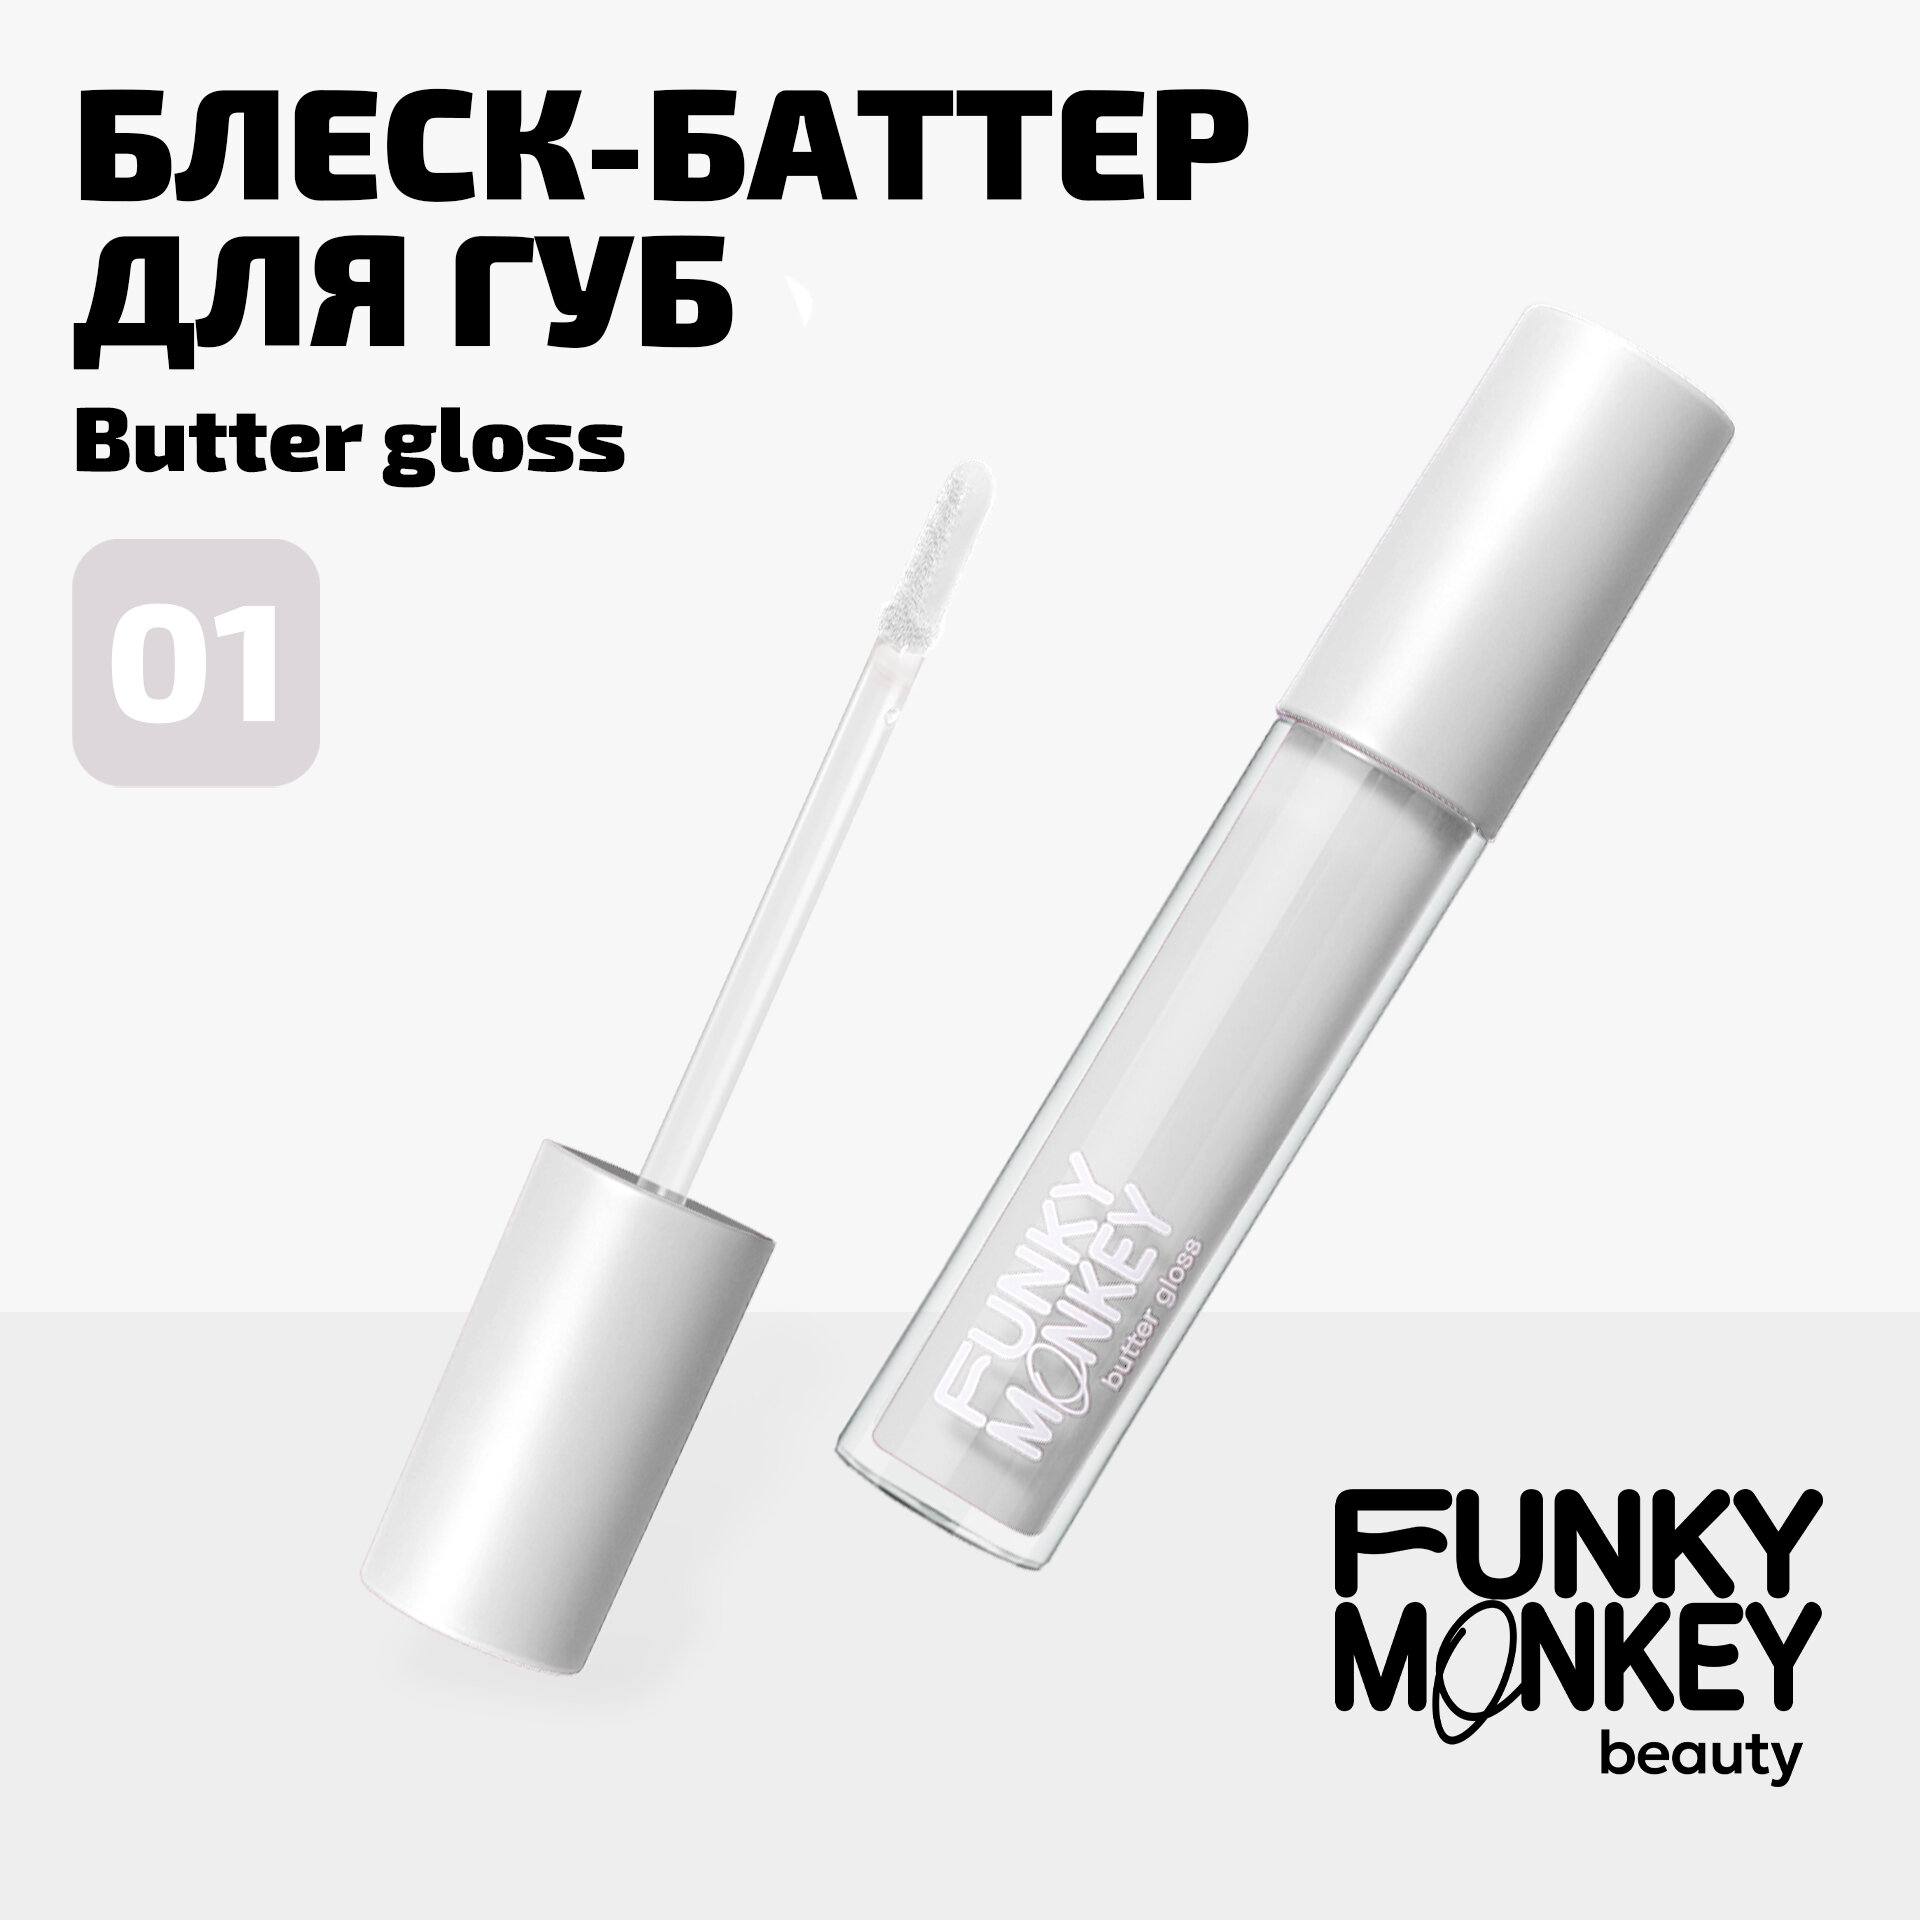 Funky Monkey Блеск - баттер для губ Butter gloss тон 01